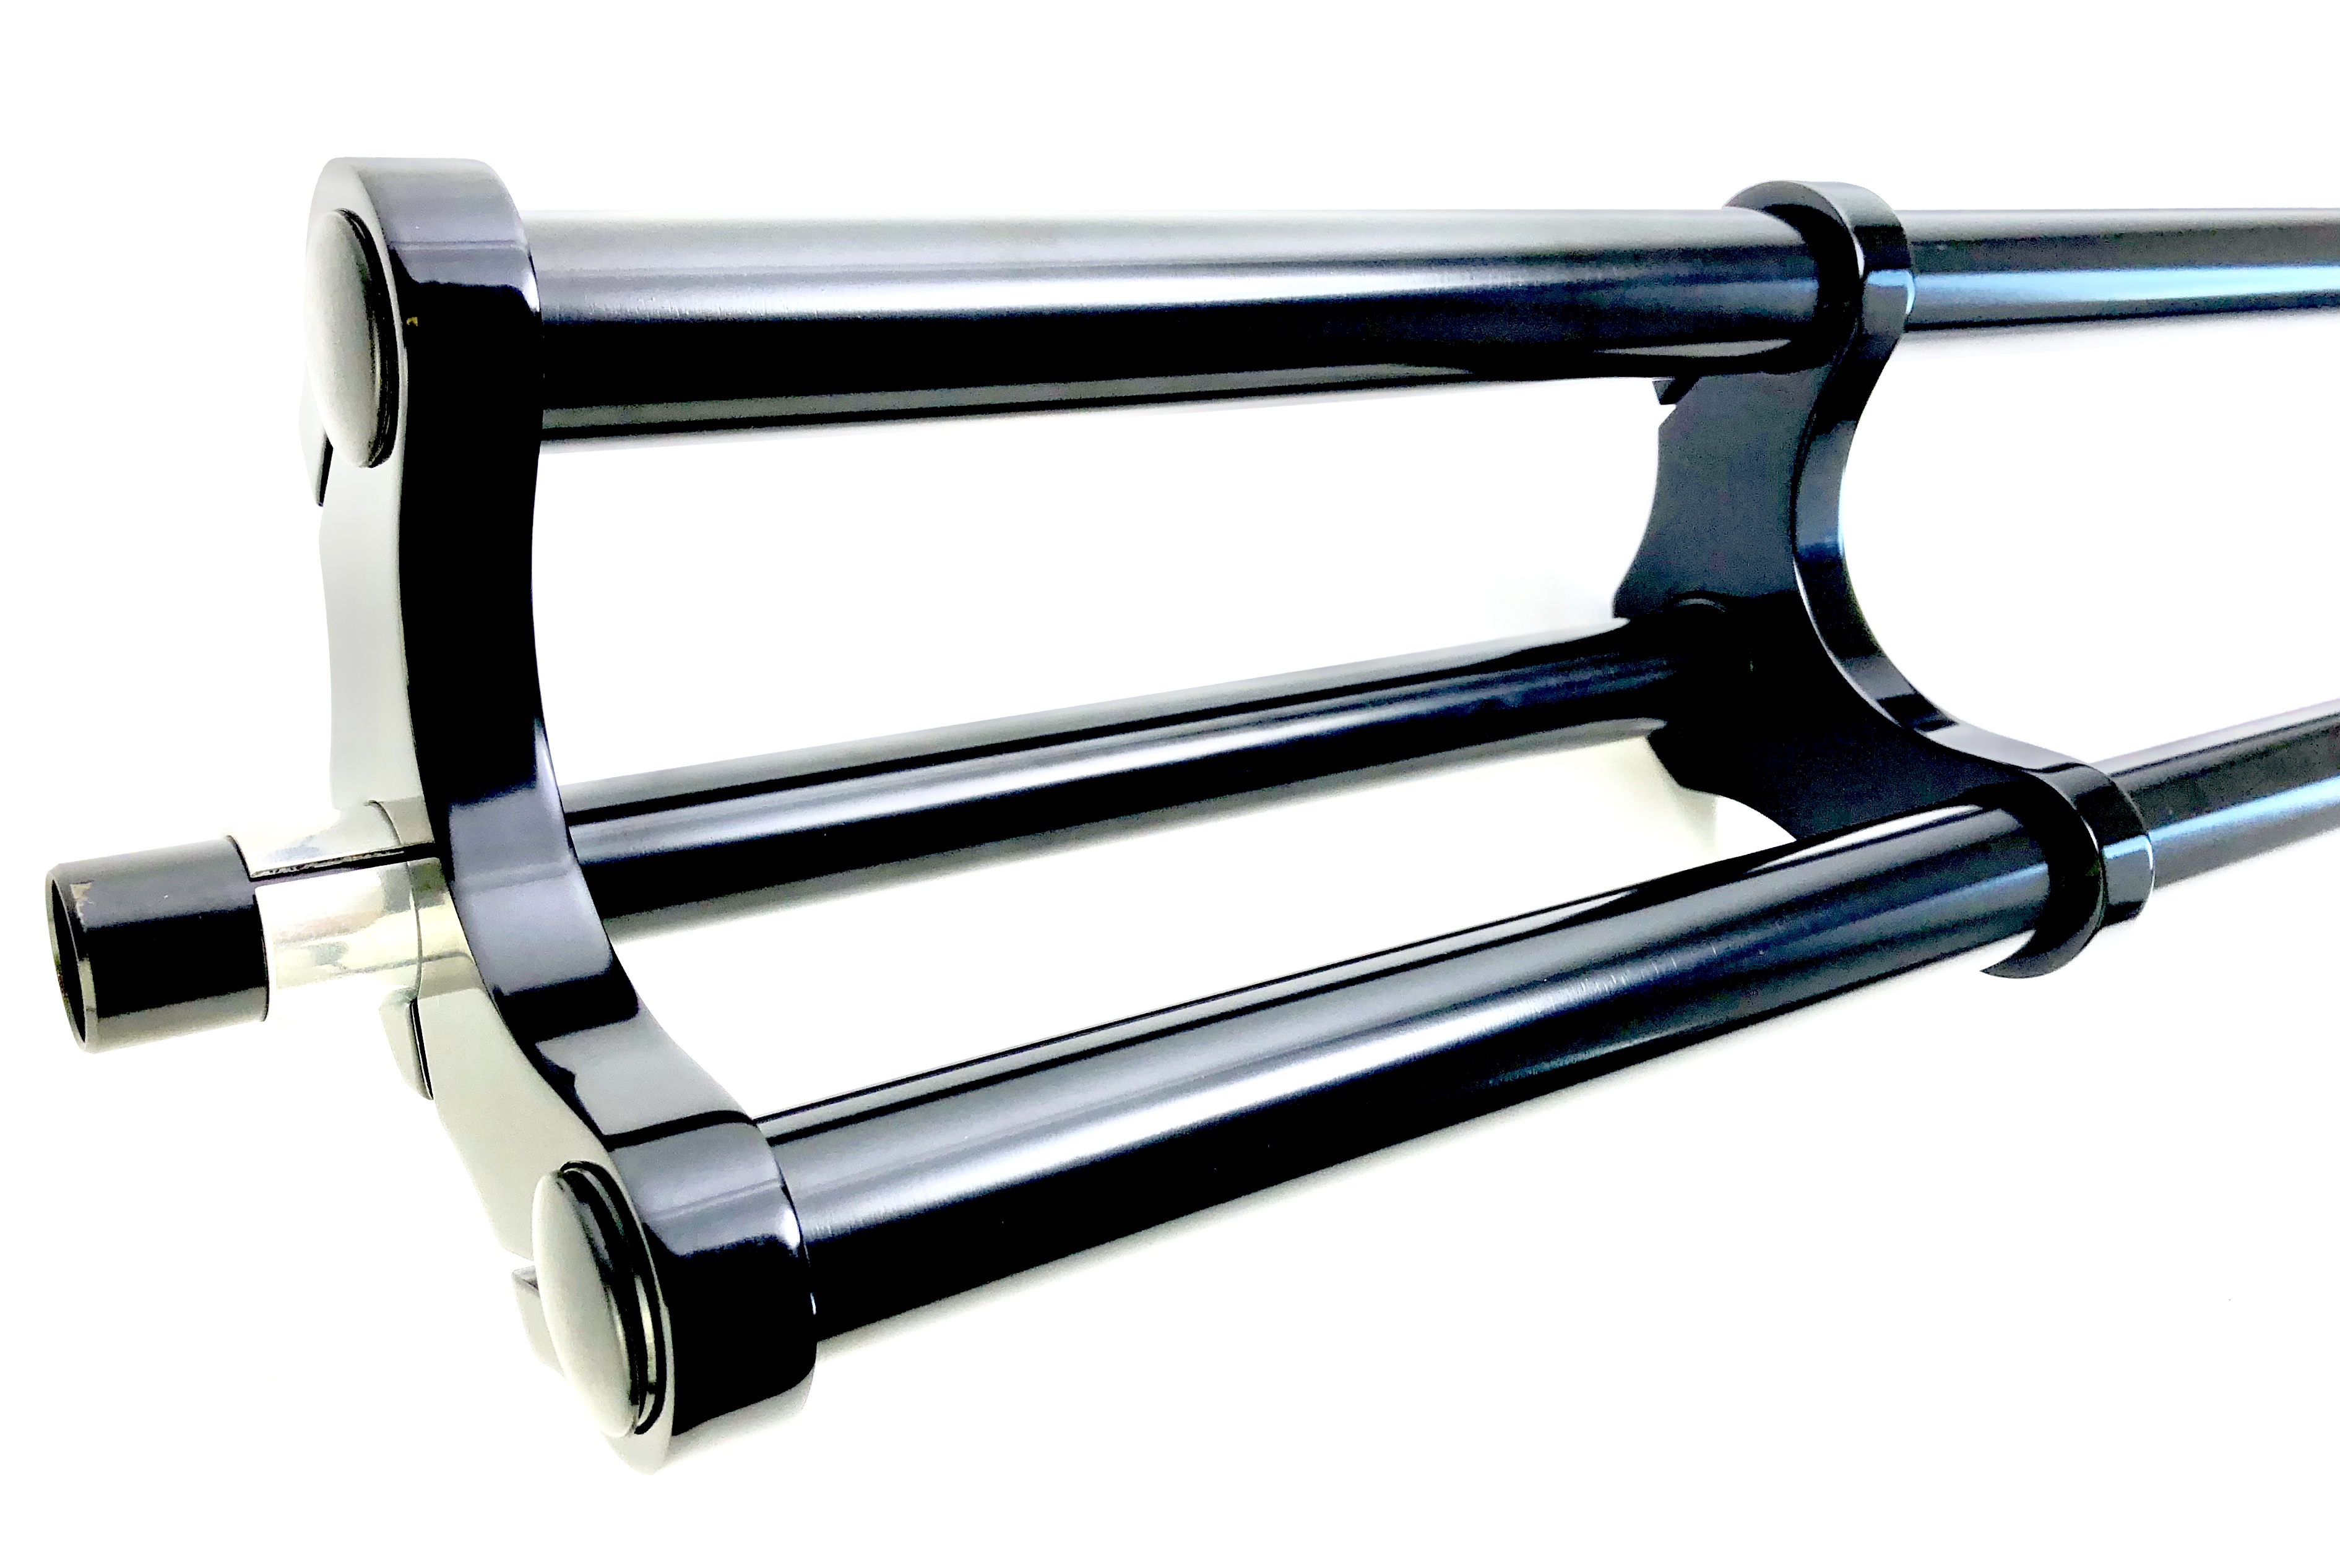 Doppelbrückengabel, langer Schaft, offset 840 mm, schwarz für 20-28 Zoll Reifen 1 1/8 Schaft